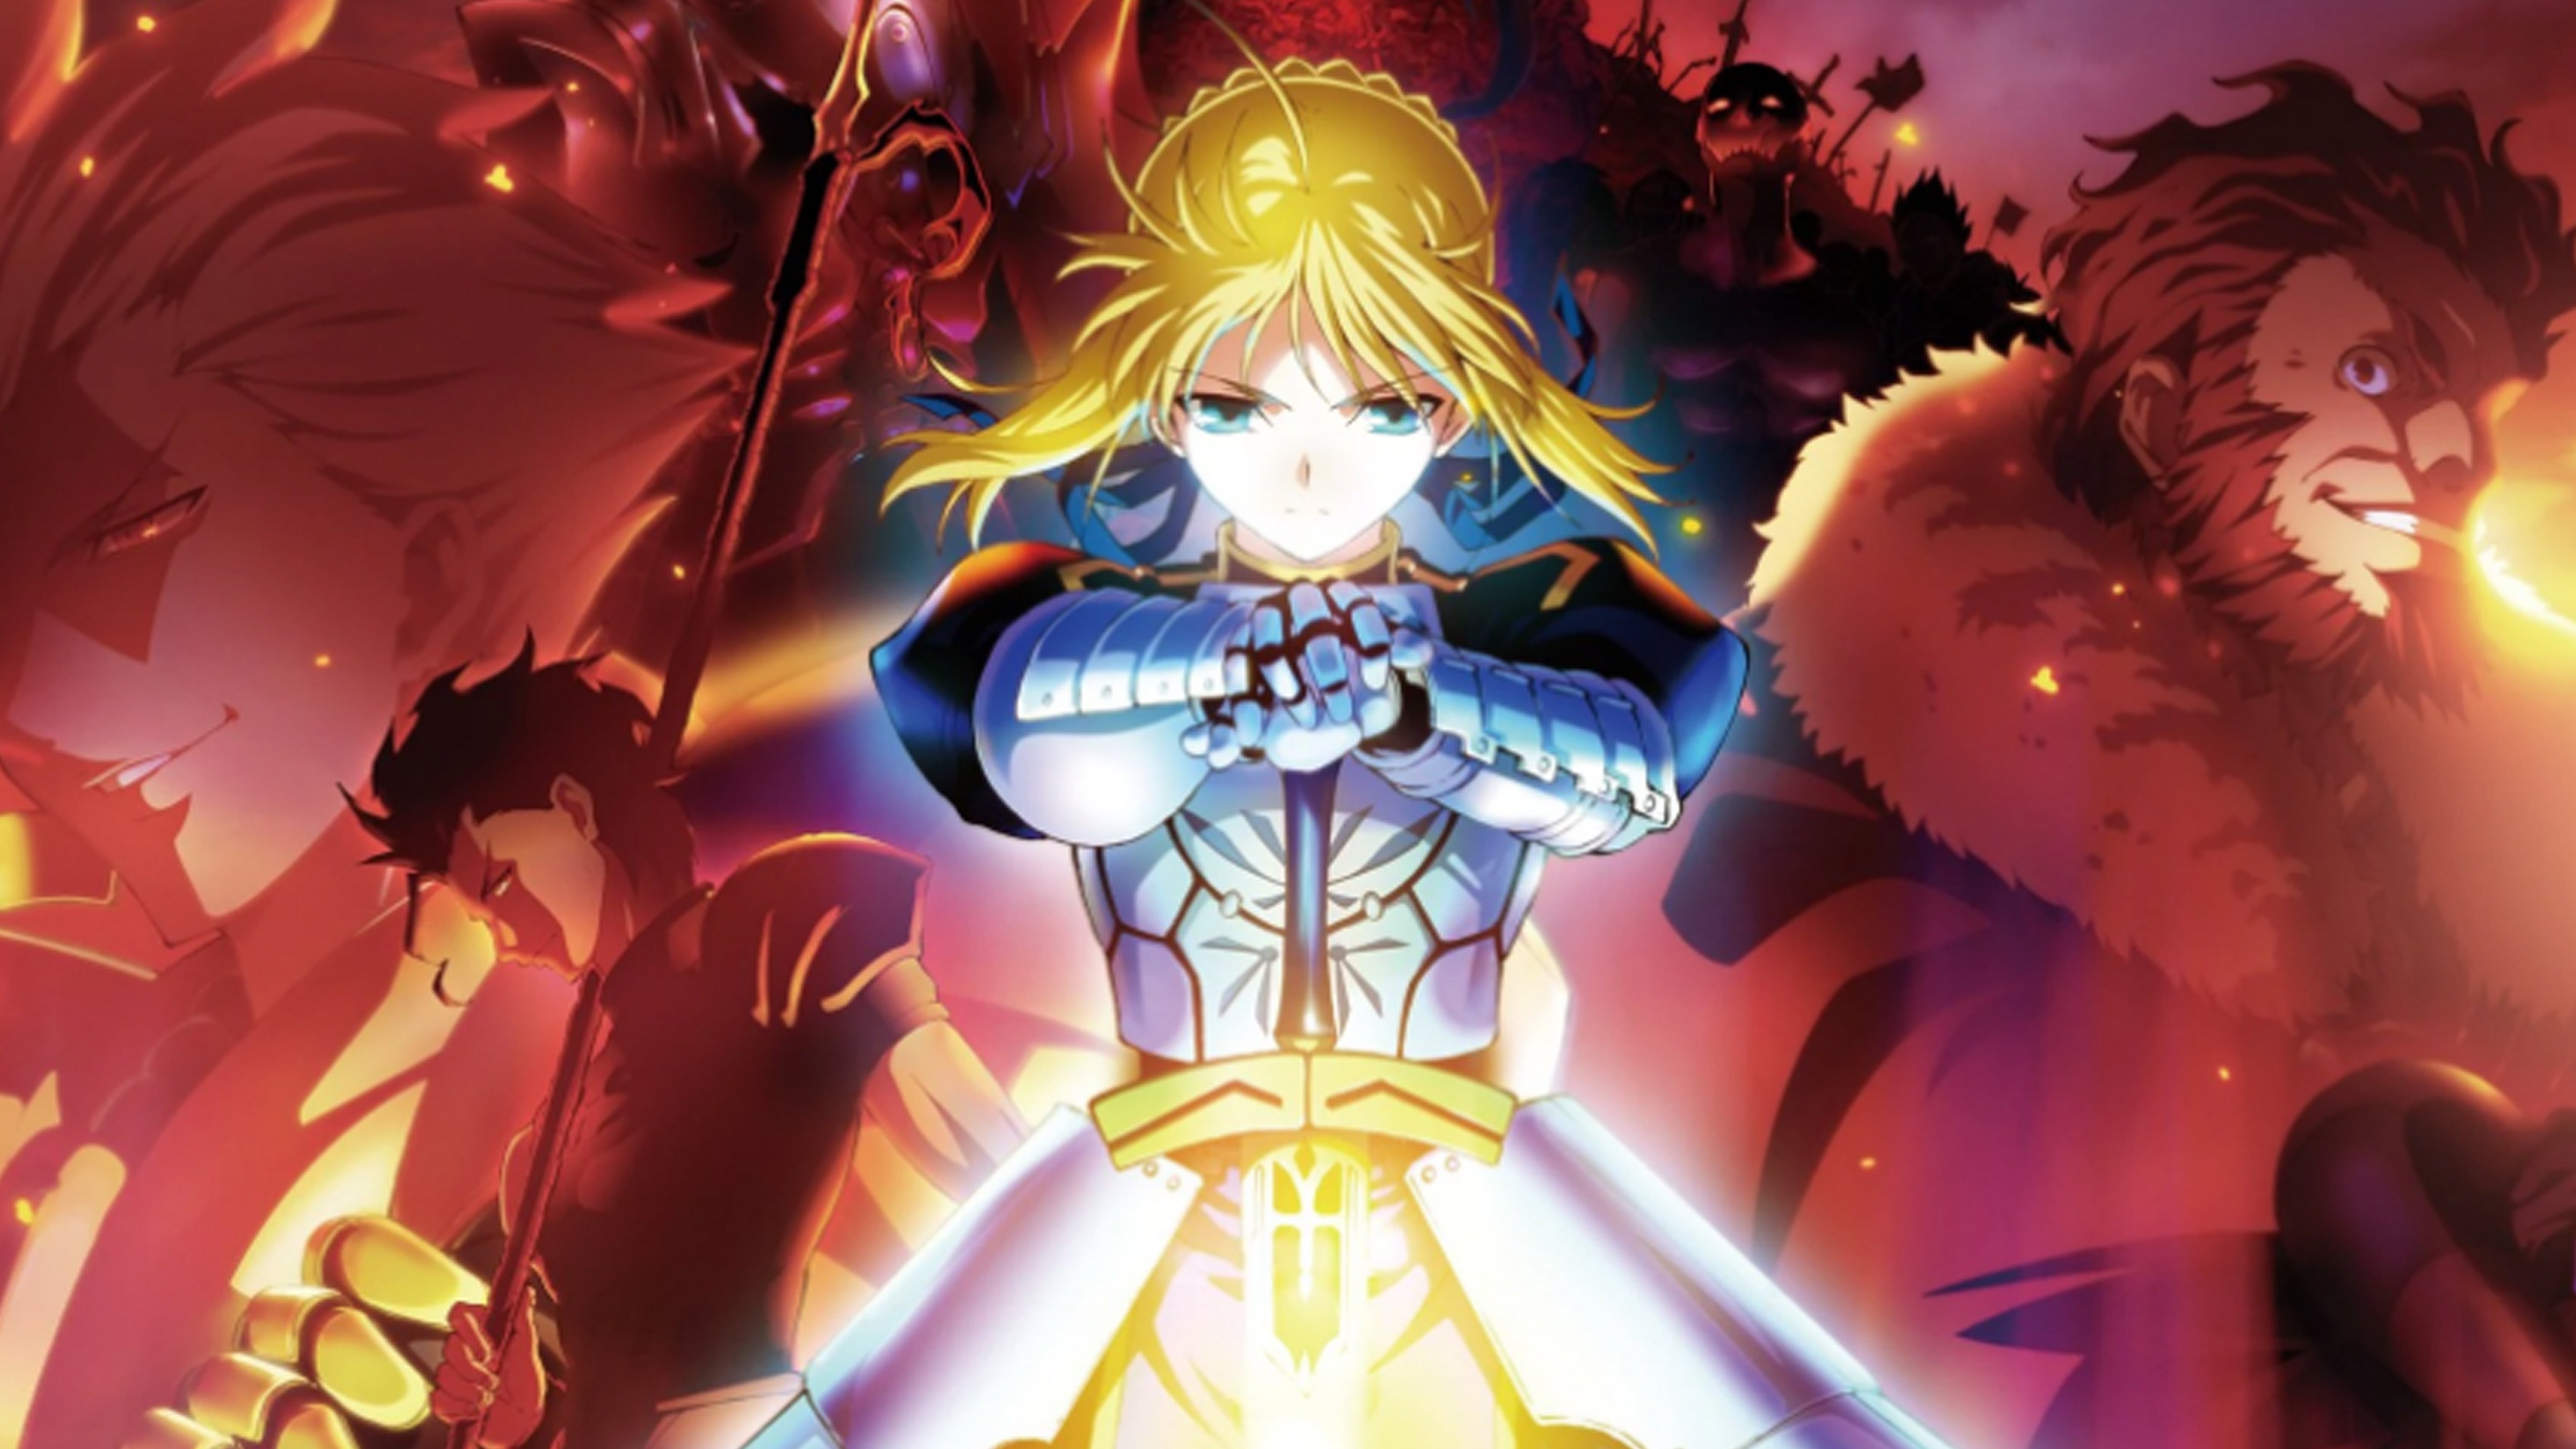 Mua Bộ 6 Áp phích - Poster Anime Fate - Cuộc Chiến Giành Chén Thánh (bóc  dán) - A3,A4,A5 - Set 1,Khổ A5 không cán tại Song Sinh Manga Shop | Tiki